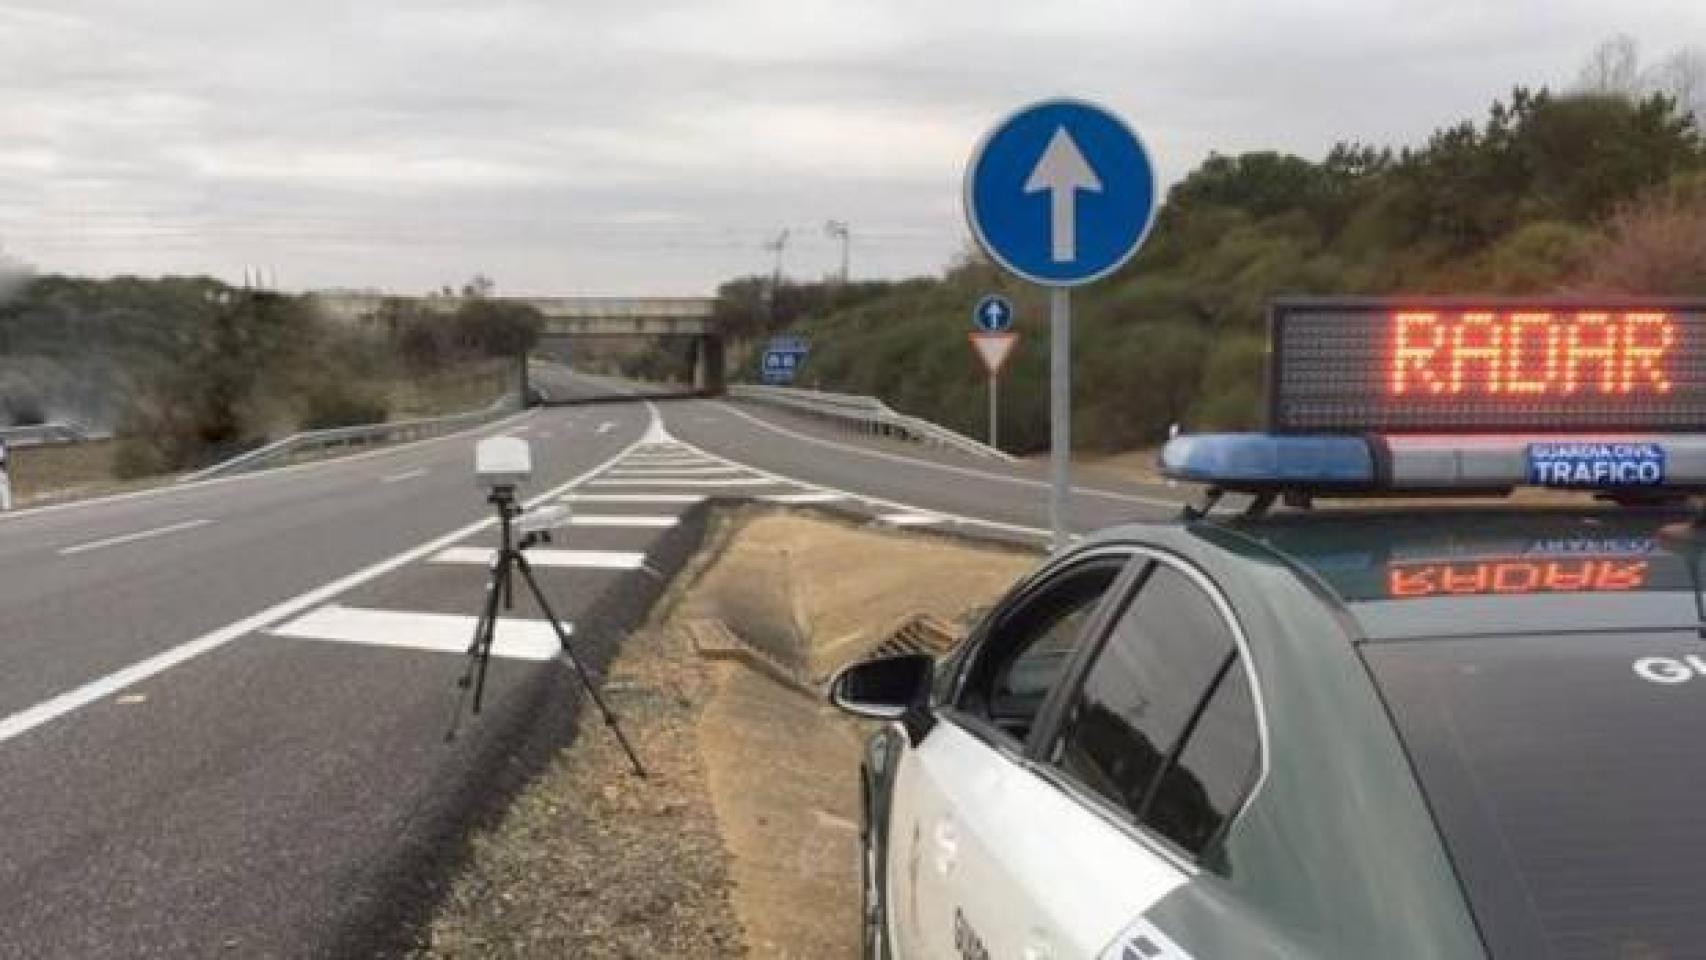 Instalación detector de radar en Valladolid